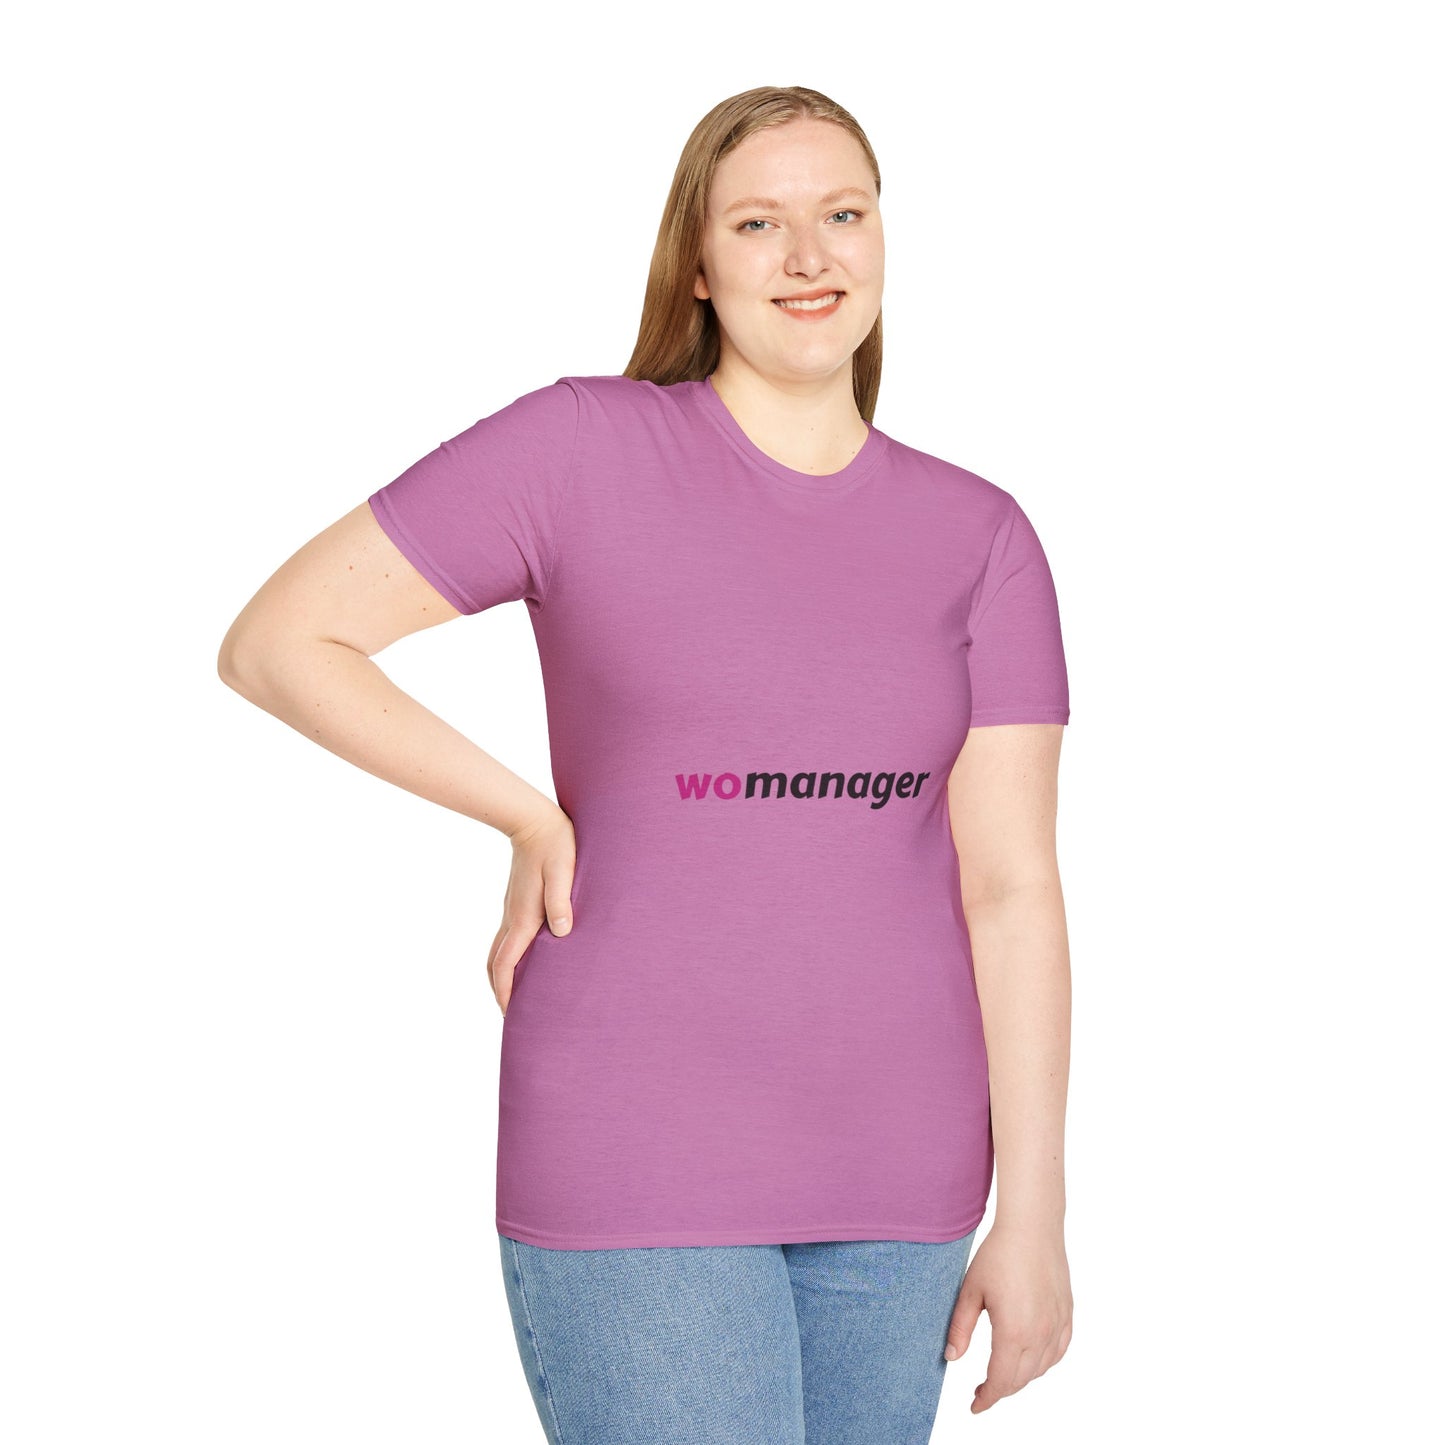 Wo-Manager Women's T-Shirt